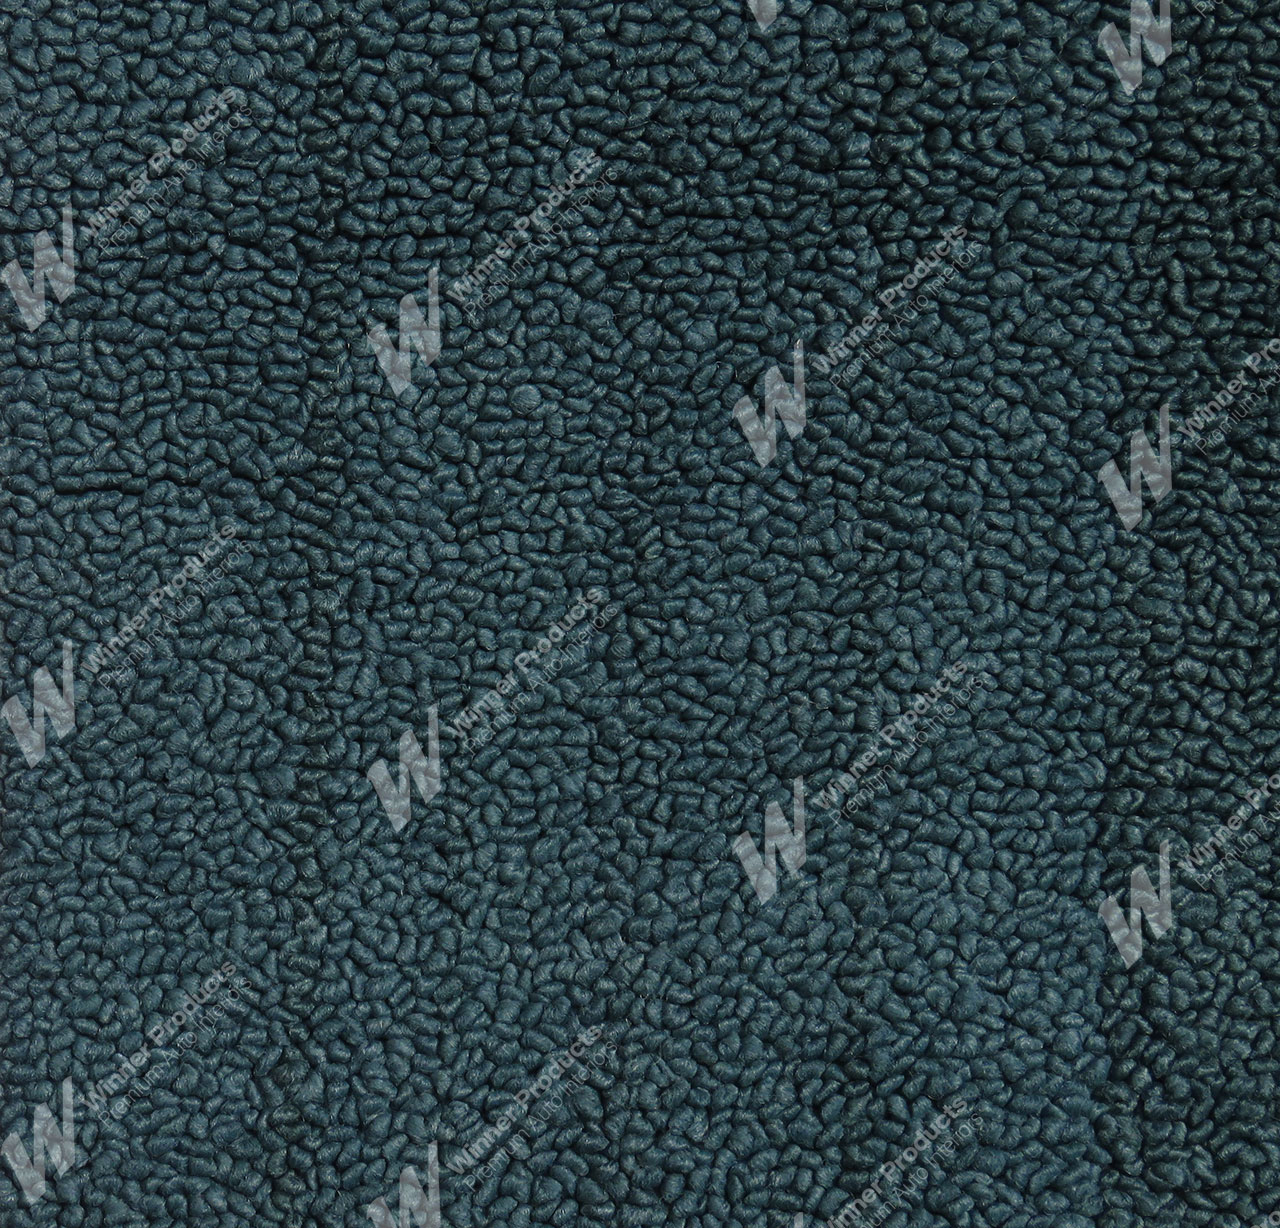 Holden Premier HG Premier Sedan 13R Turquoise Mist Carpet (Image 1 of 1)